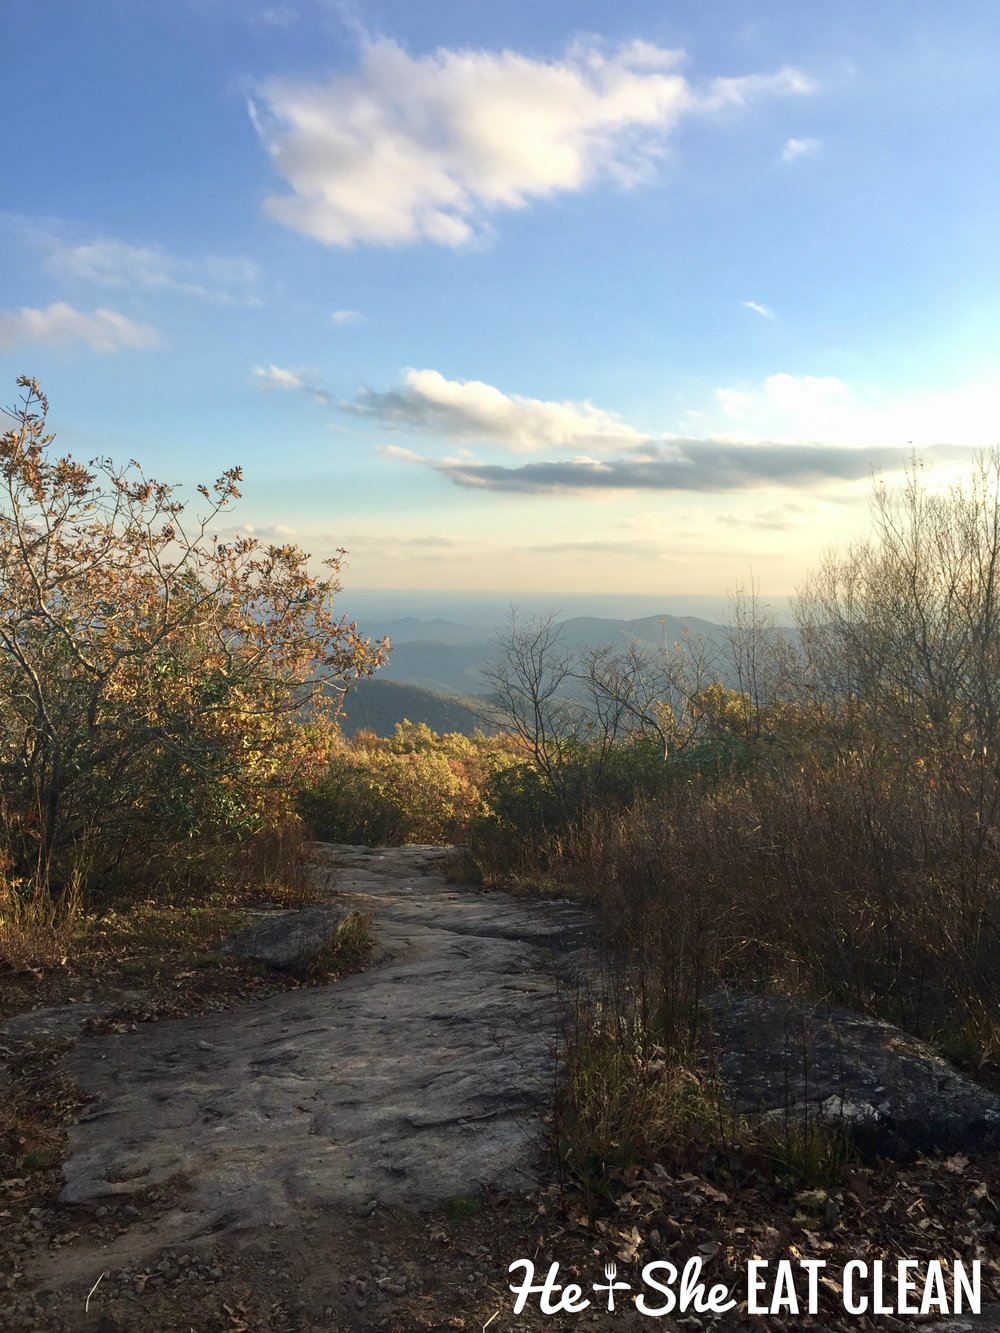  Hiking Blood Mountain on the Appalachian Trail in Georgia 